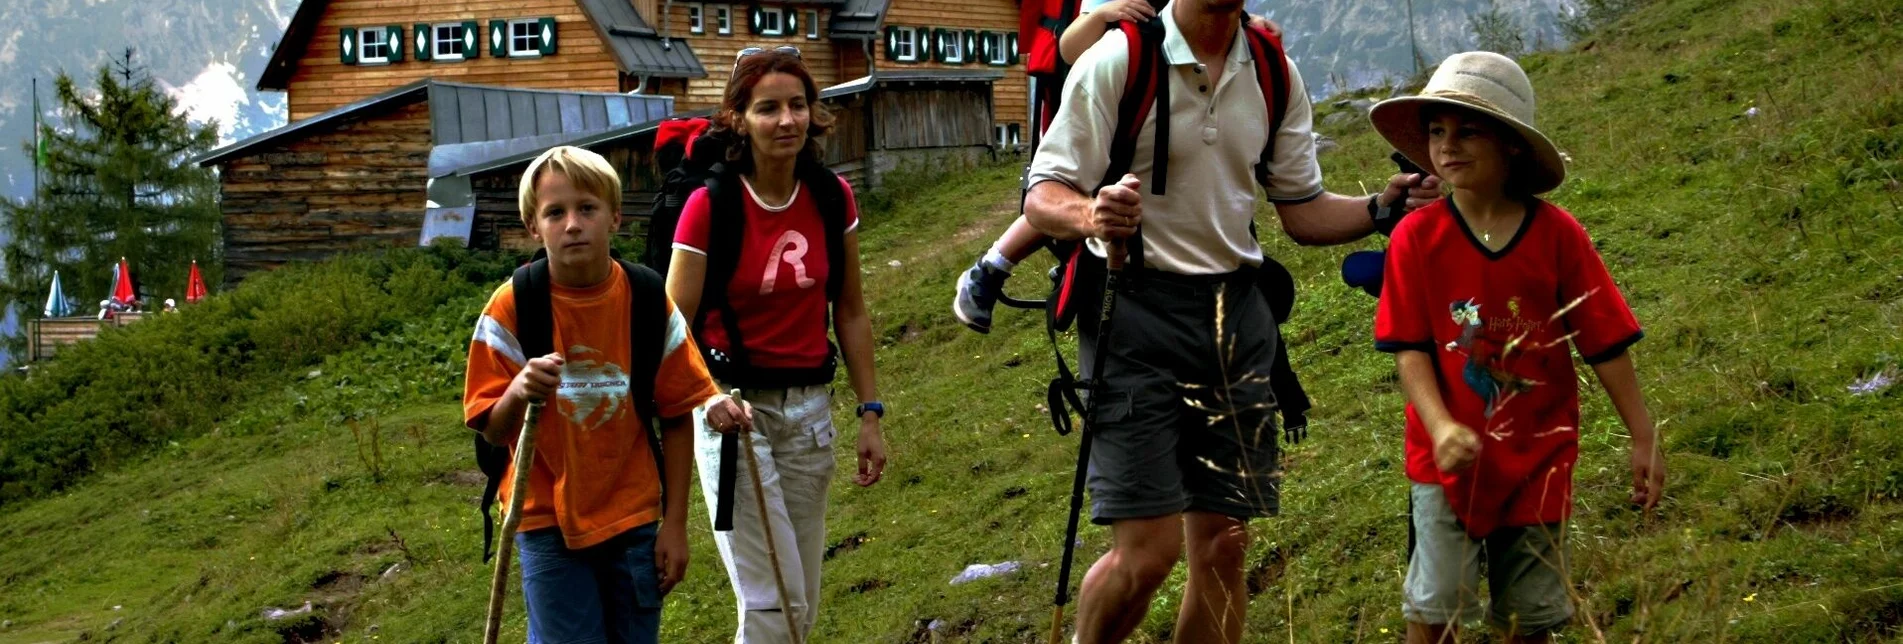 Hiking route Alm Stroll - Touren-Impression #1 | © Erlebnisregion Schladming-Dachstein